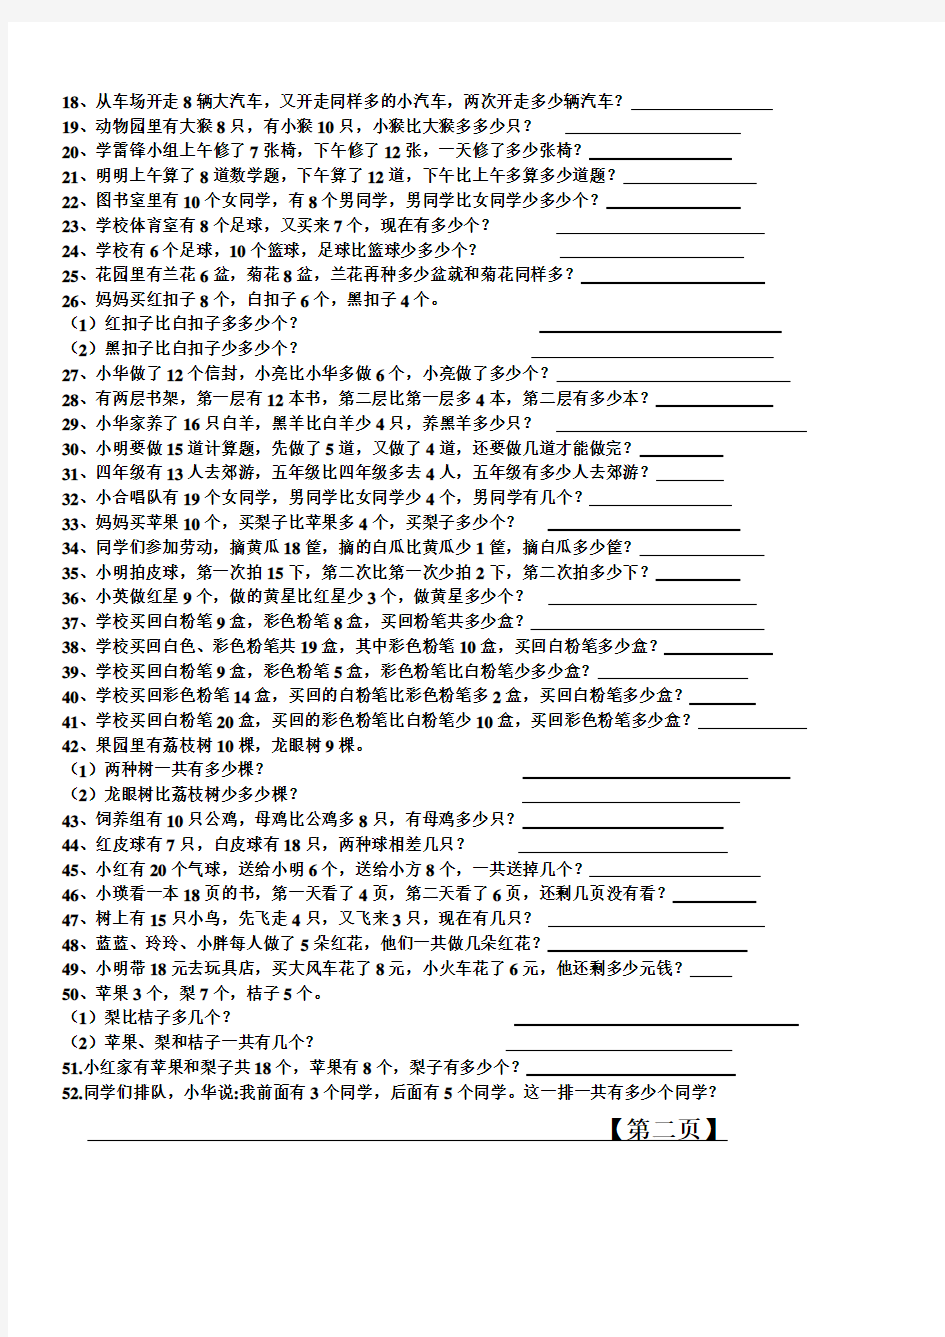 2019年一年级数学上册应用题大全(50道)